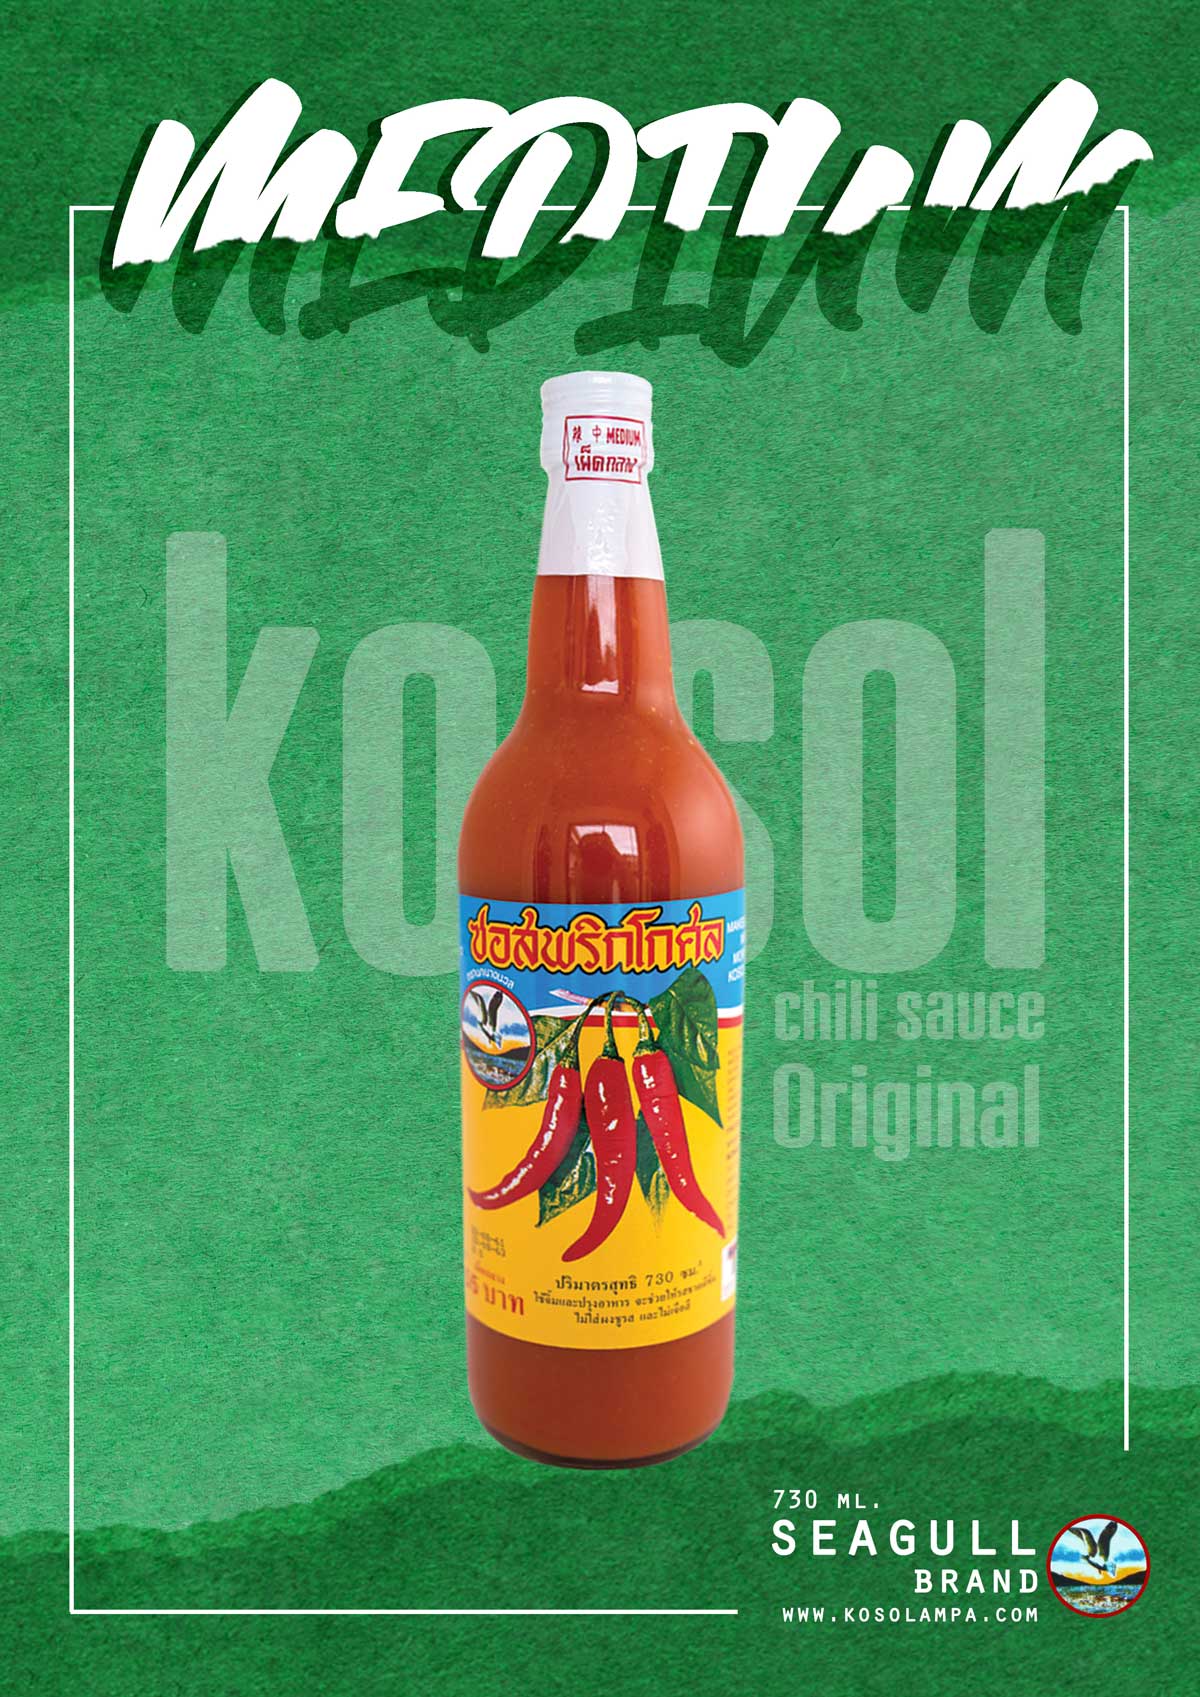 ซอสพริกโกศล ที่สุดของซอสพริก #สูตรเผ็ดกลาง (730 ml.) ทานกับอะไรก็อร่อย ซอสพริก โกศล Kosol Chili Sauce ตรานกนางนวล Chili Sauce